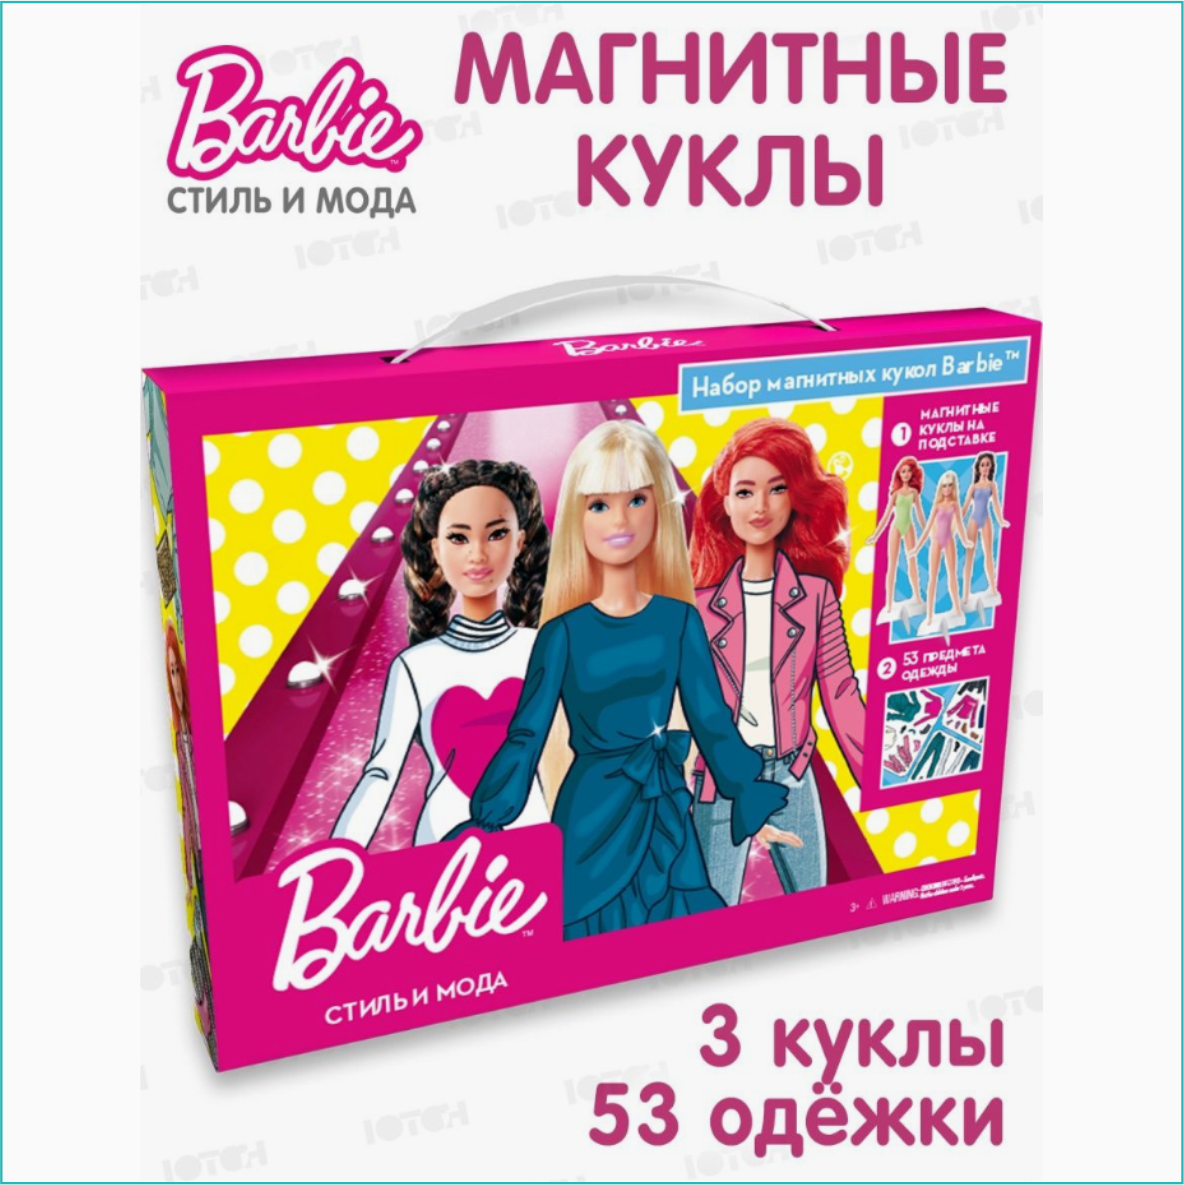 Магнитные куклы "Барби - Стиль и мода" Barbie (3 куклы 53 одежки)